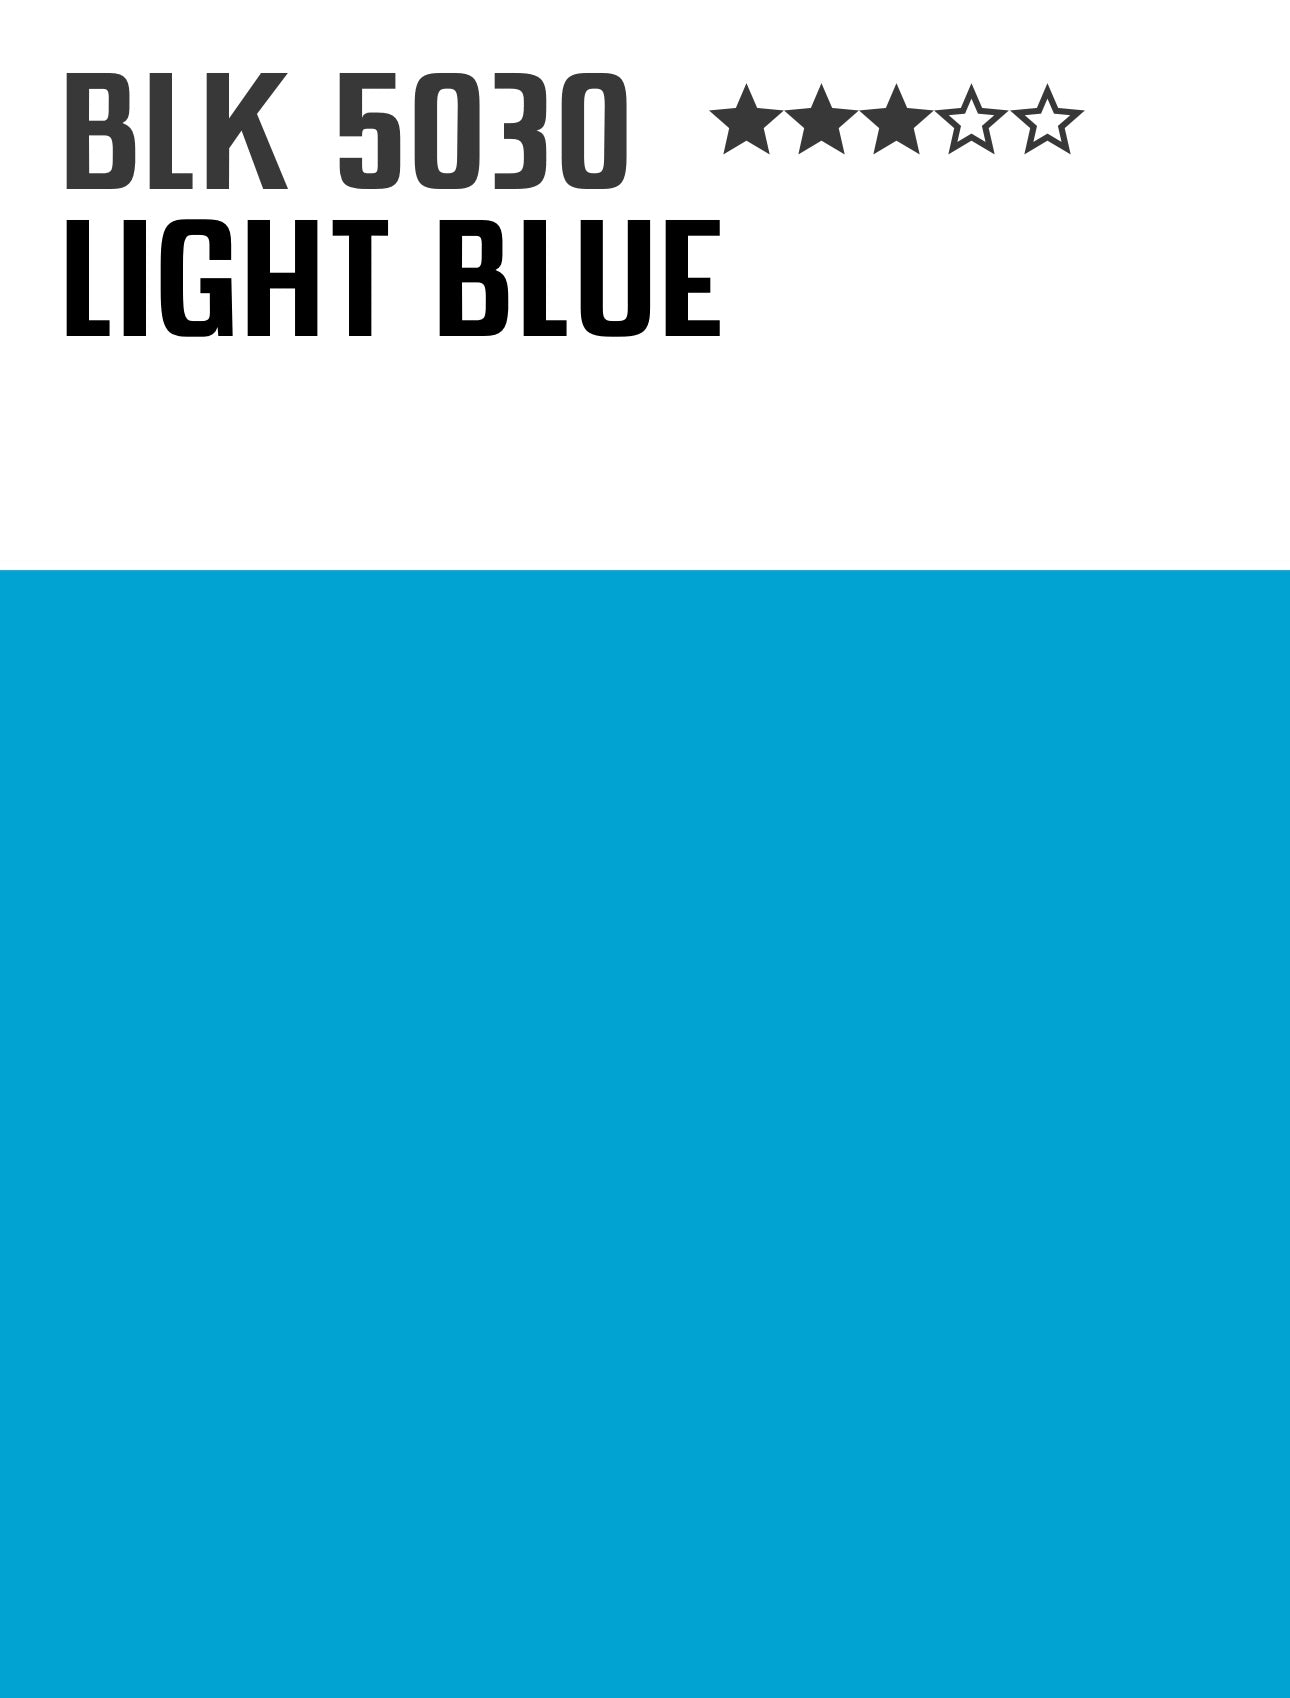 lightblue-montanablack